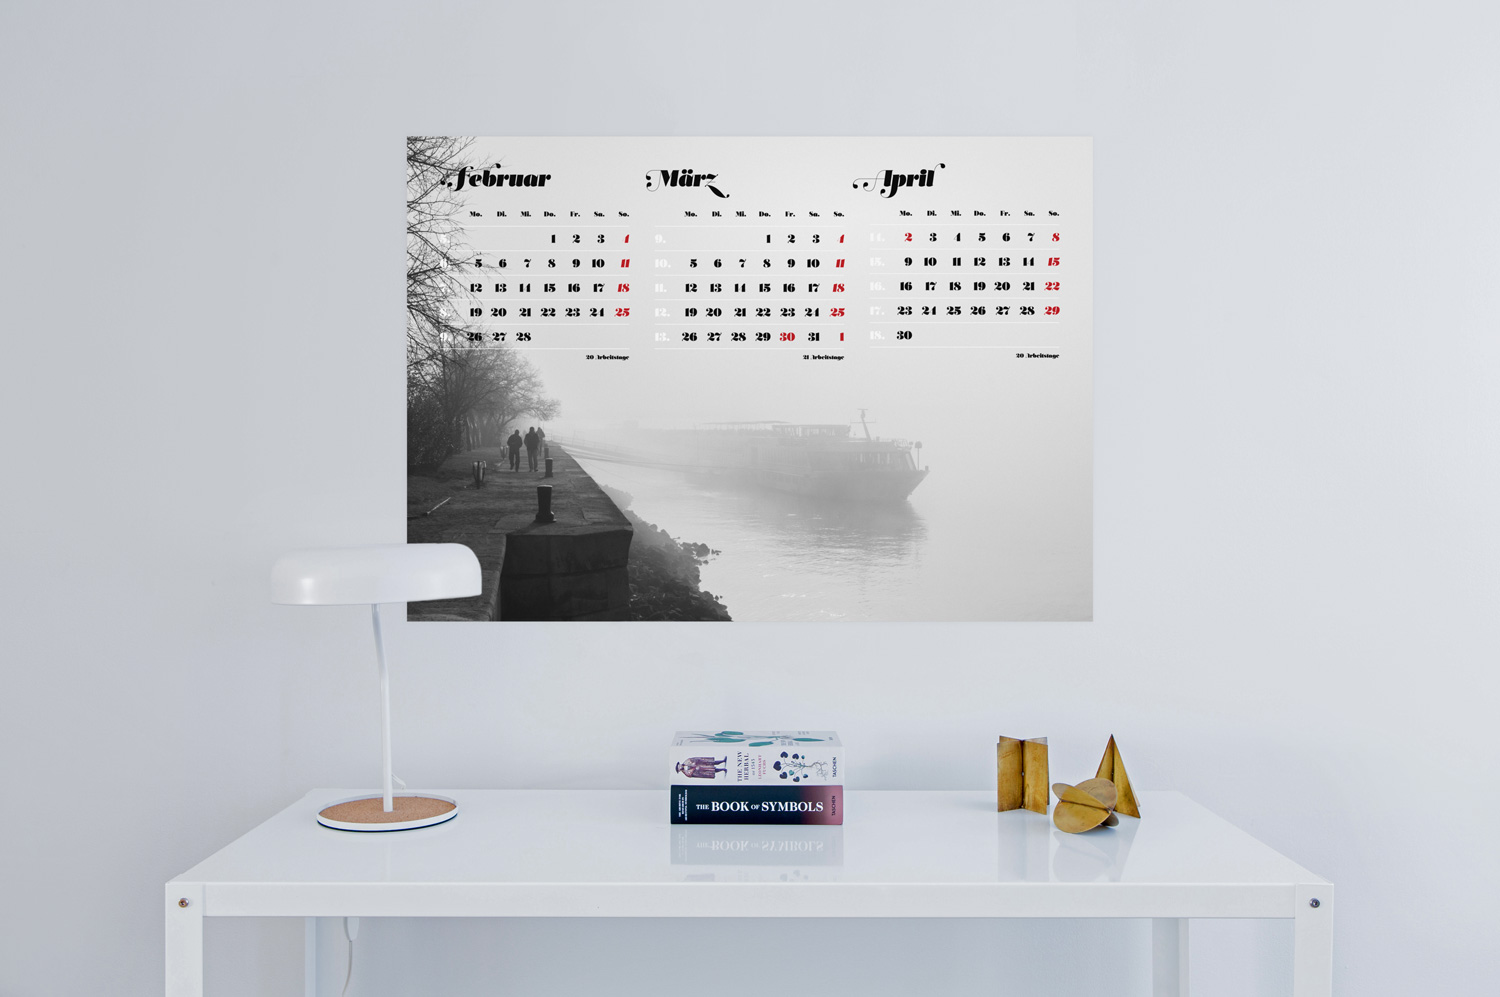 Dreimonatskalender in deutscher Sprache mit nebeneinanderliegenden Monaten und dem Schwerpunkt auf Fotografien. Er wurde zweifarbig schwarz und rot in Acta Poster gesetzt und beinhaltet die Anzahl der Arbeitstage sowie die Angabe der Kalenderwoche